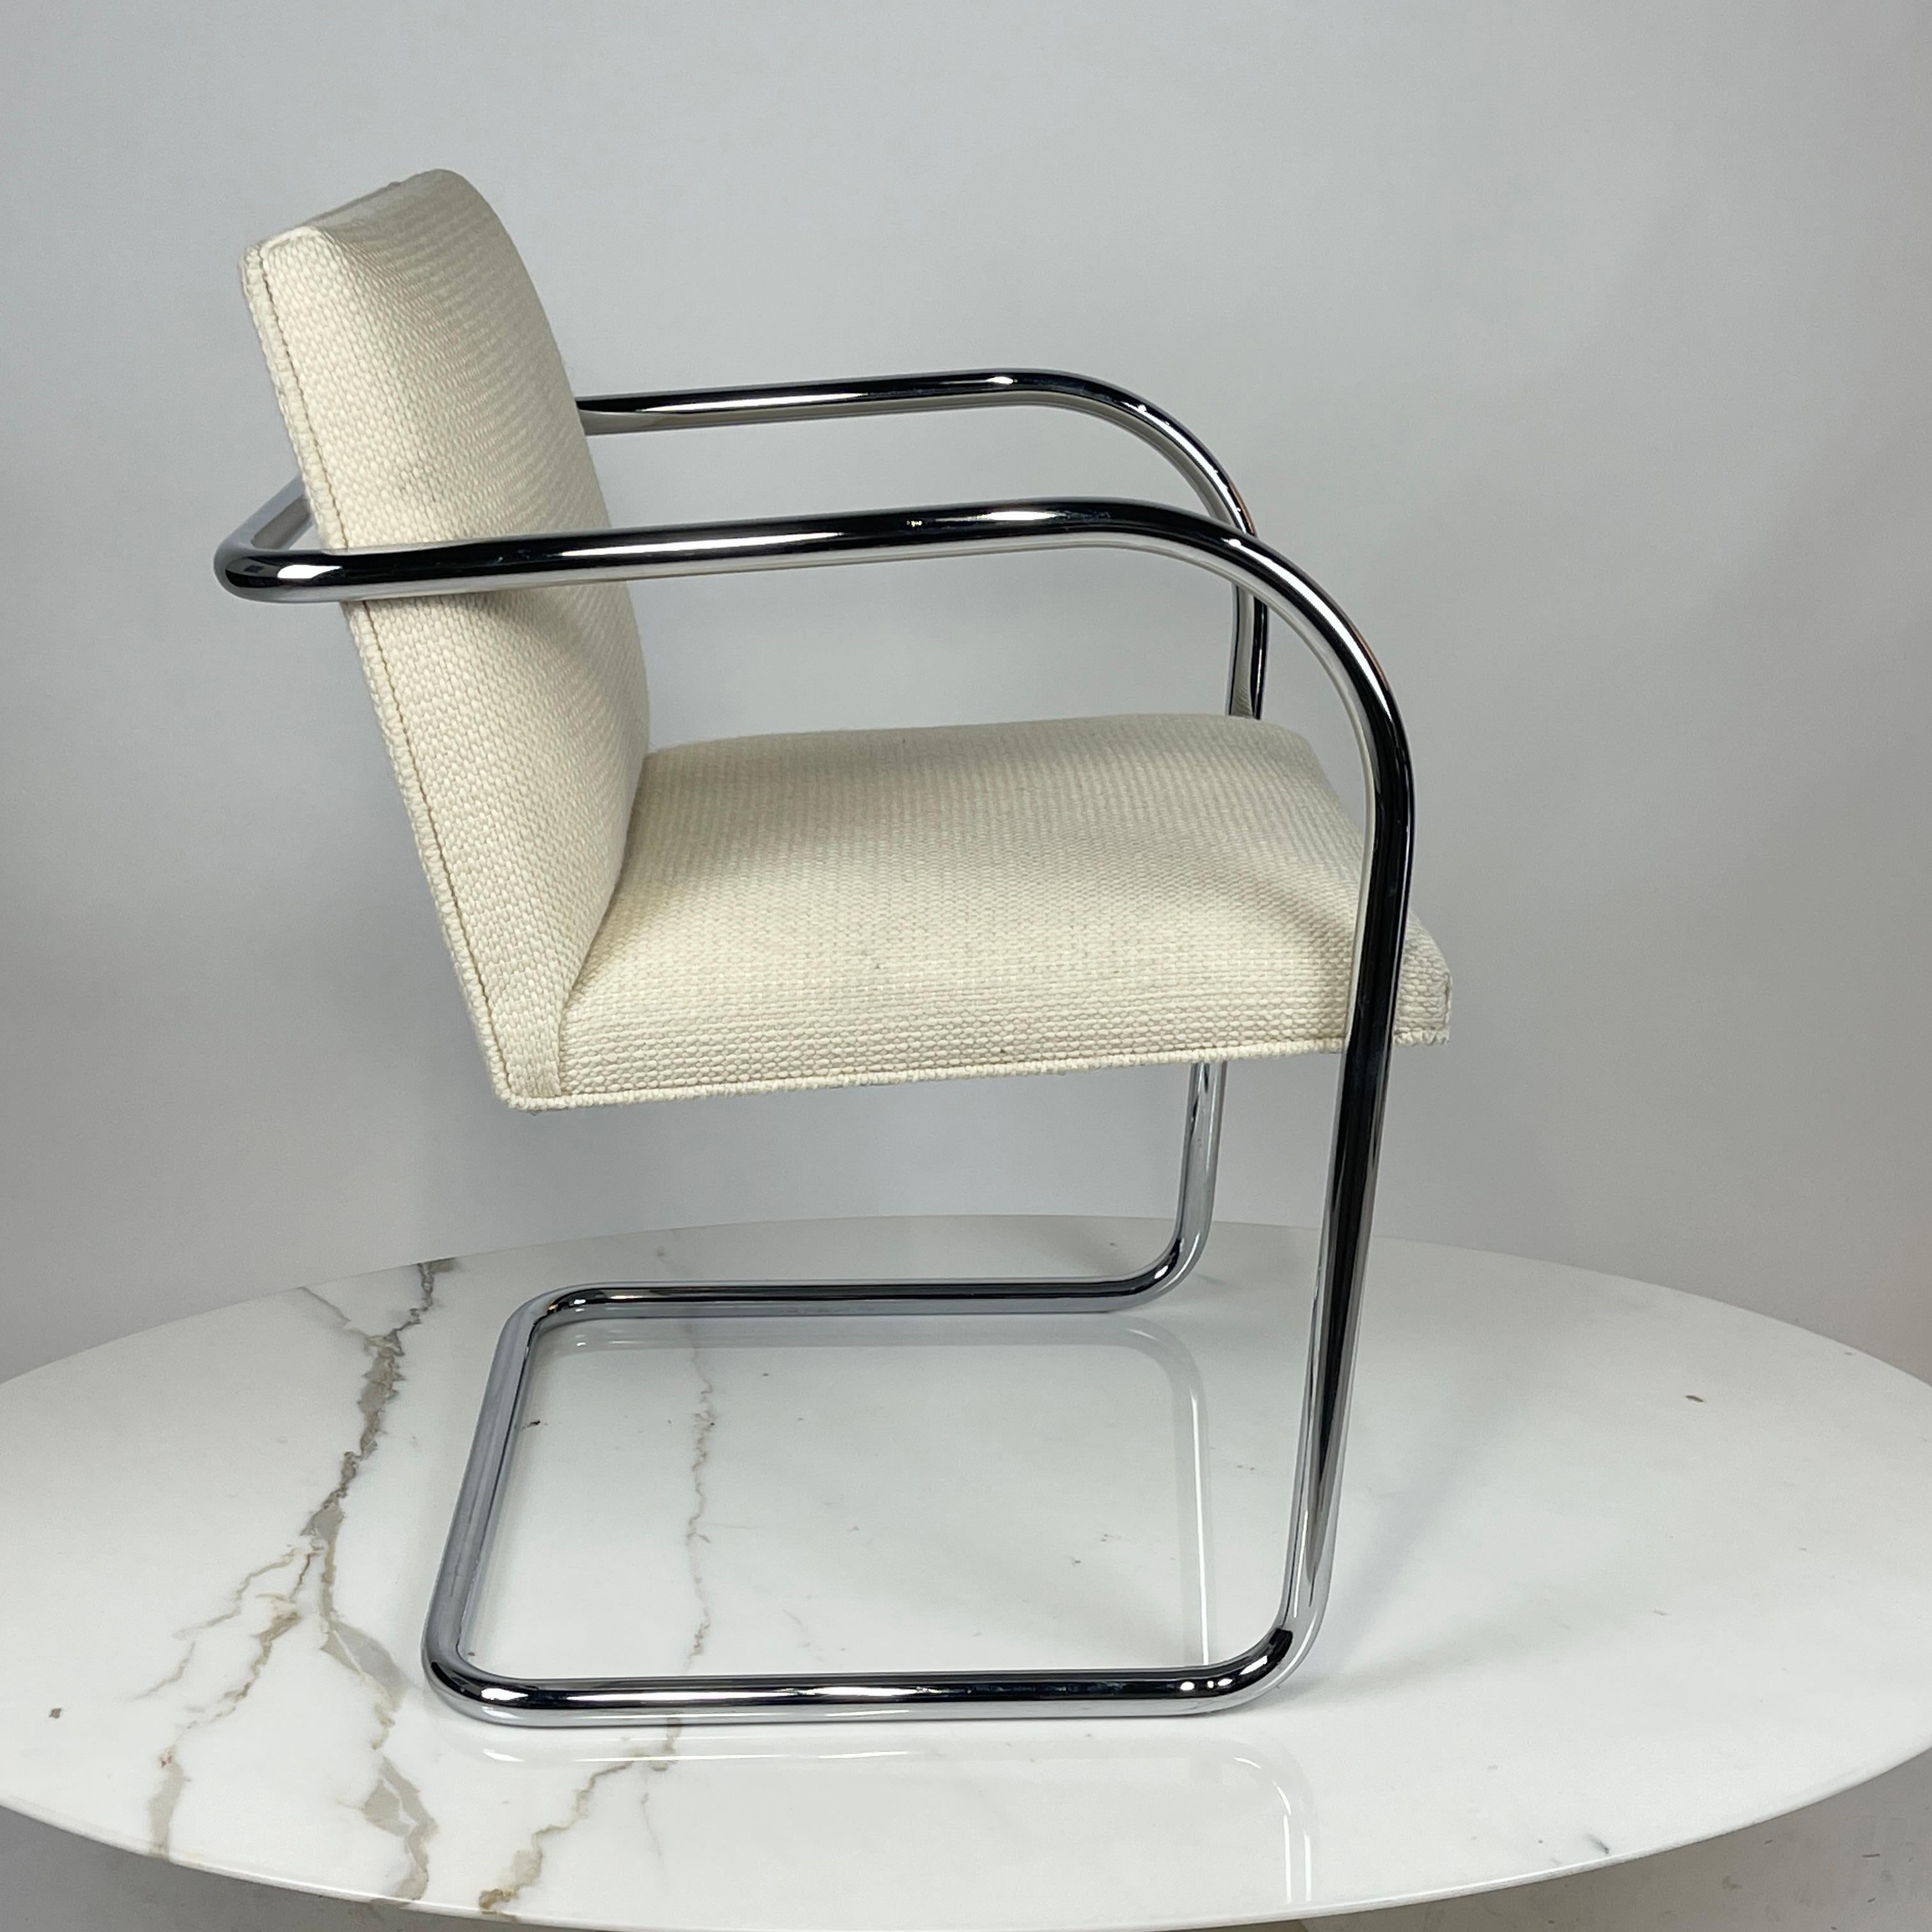 DIESE AUFLISTUNG IST FÜR EINEN SATZ VON 4

Knoll Brno Stuhl, entworfen von Mies Van der Rohe. Diese Stühle sind mit der Cato-Polsterung von Knoll gepolstert. Die Farbe ist 